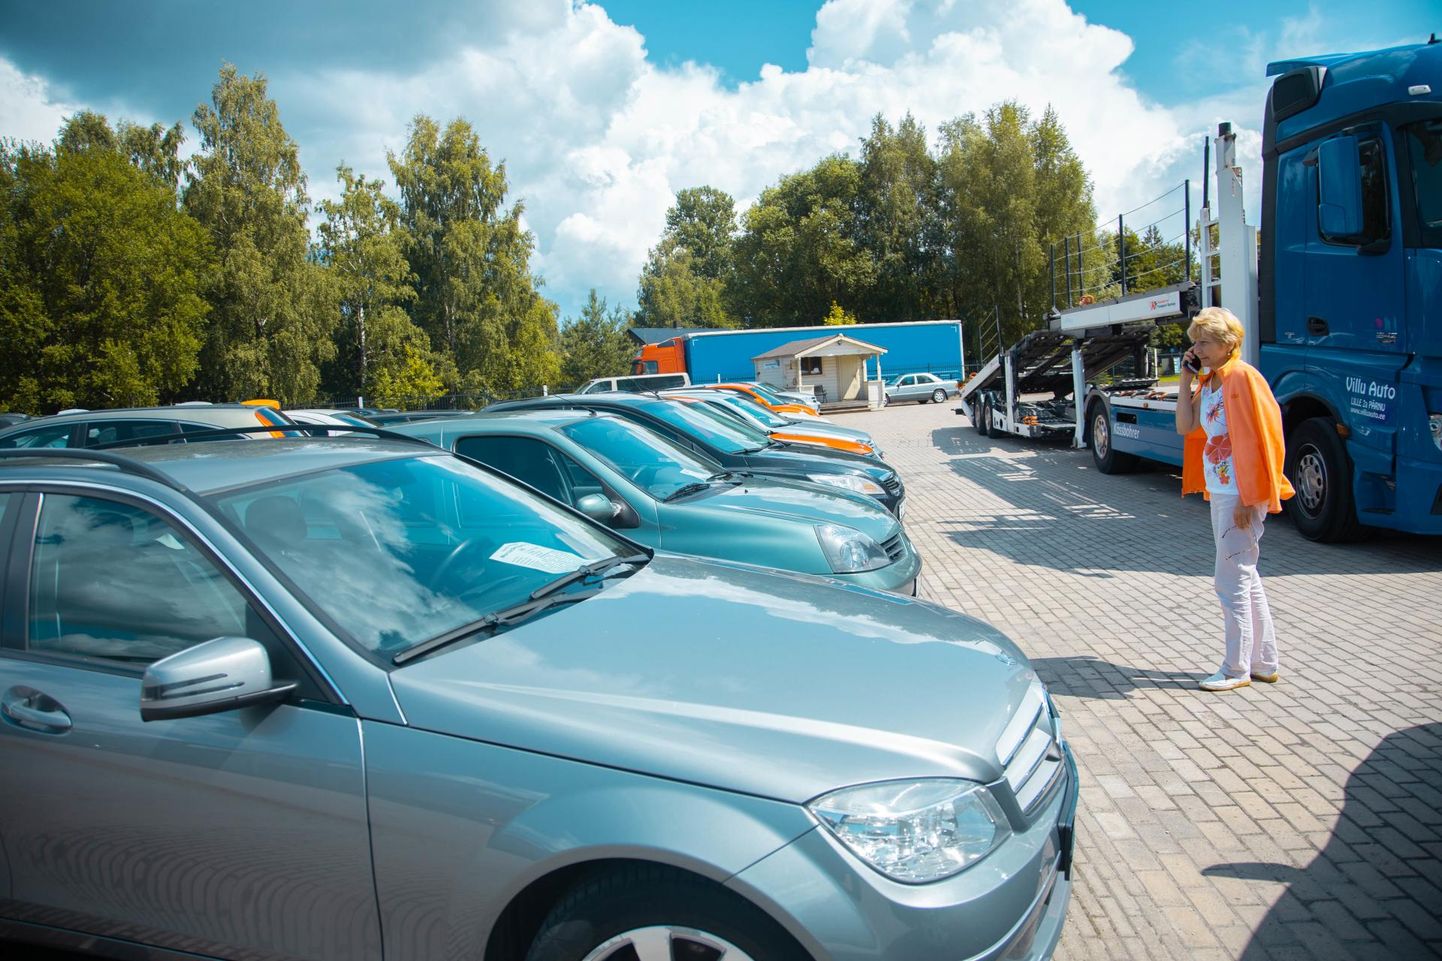 Autorendist on võimalik laenata eri perioodideks mitmesuguseid sõidukeid. Näiteks saab klient valida manuaal- või automaat­käigukastiga auto vahel.